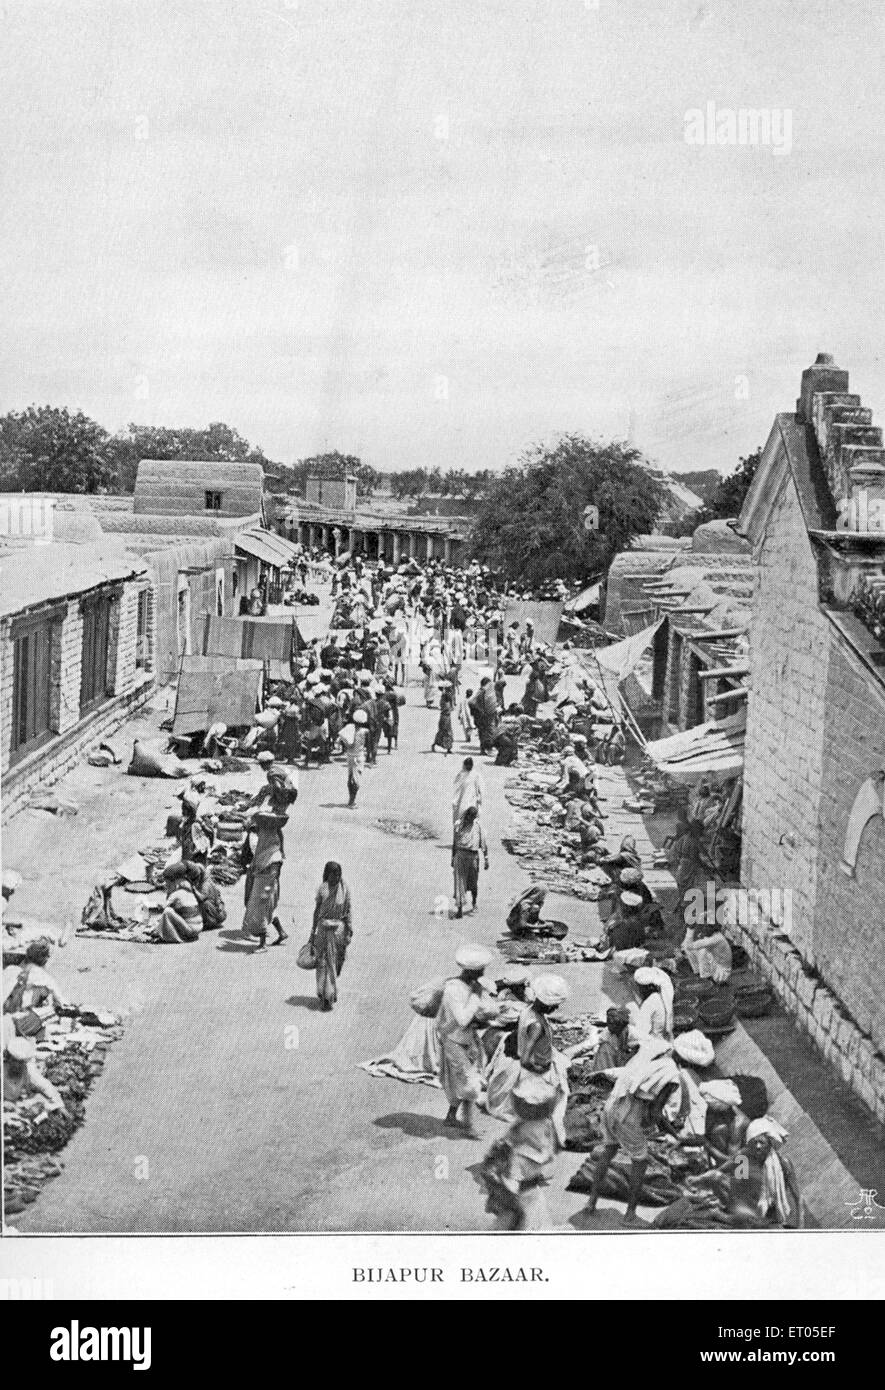 Rue du marché, Bijapur, Bijapura, Vijayapura, Karnataka, Inde, Asie, millésime, années 1800 Banque D'Images